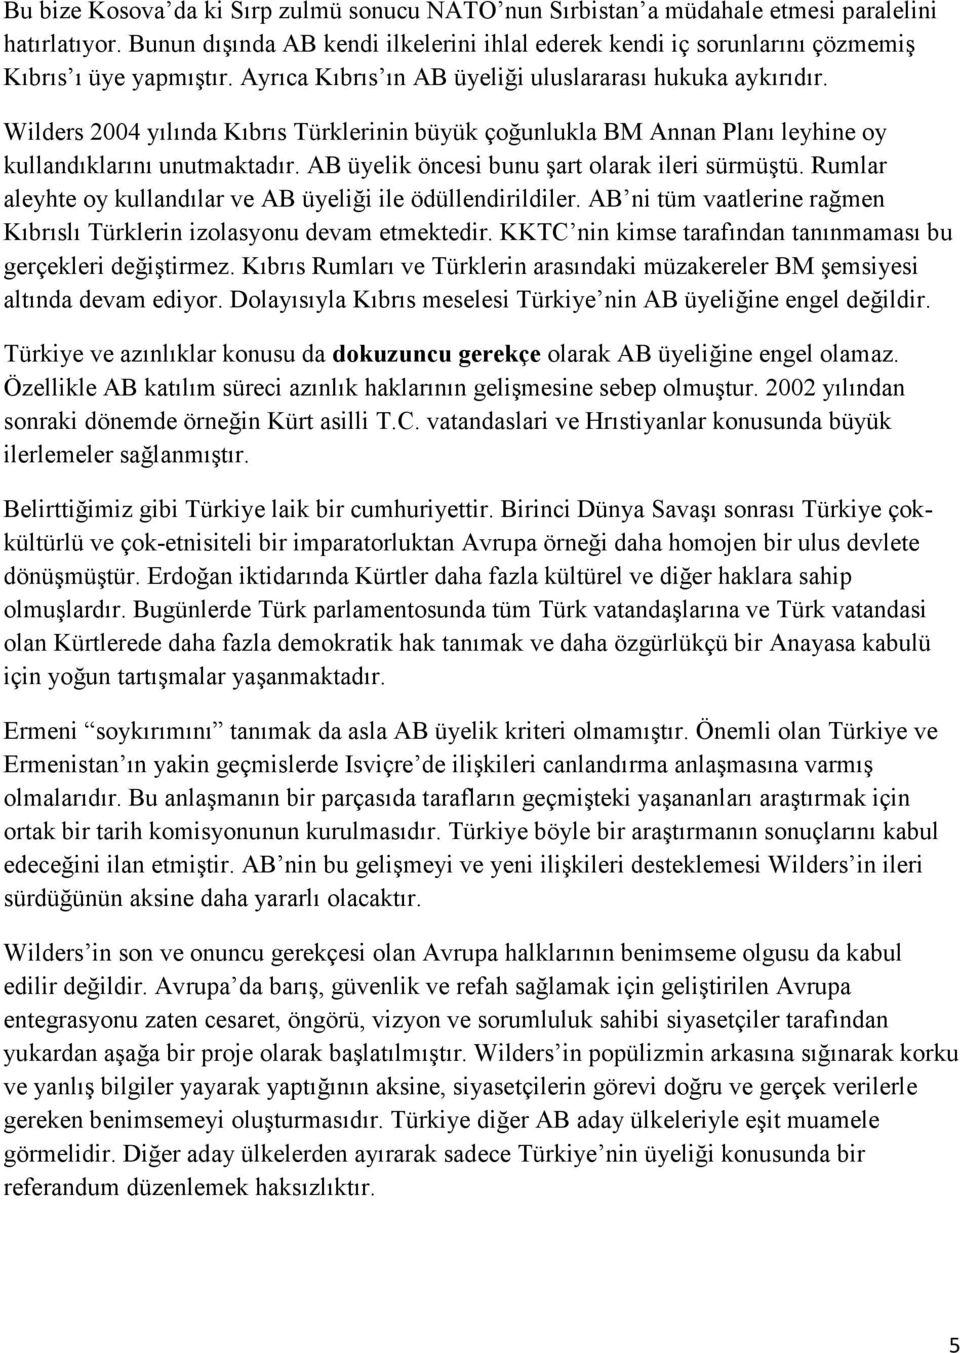 Wilders 2004 yılında Kıbrıs Türklerinin büyük çoğunlukla BM Annan Planı leyhine oy kullandıklarını unutmaktadır. AB üyelik öncesi bunu şart olarak ileri sürmüştü.